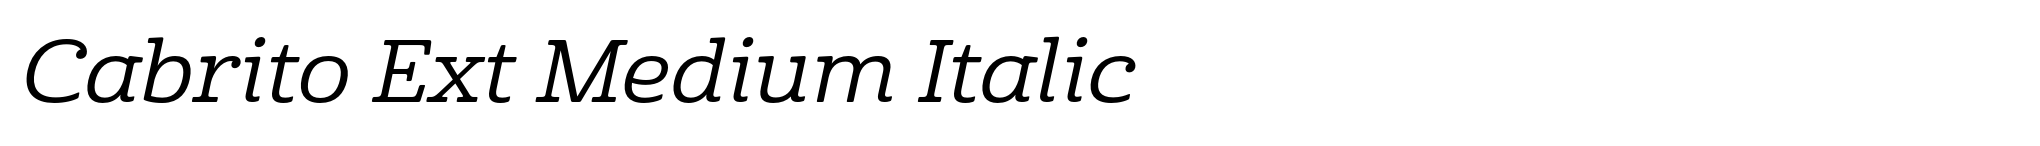 Cabrito Ext Medium Italic image